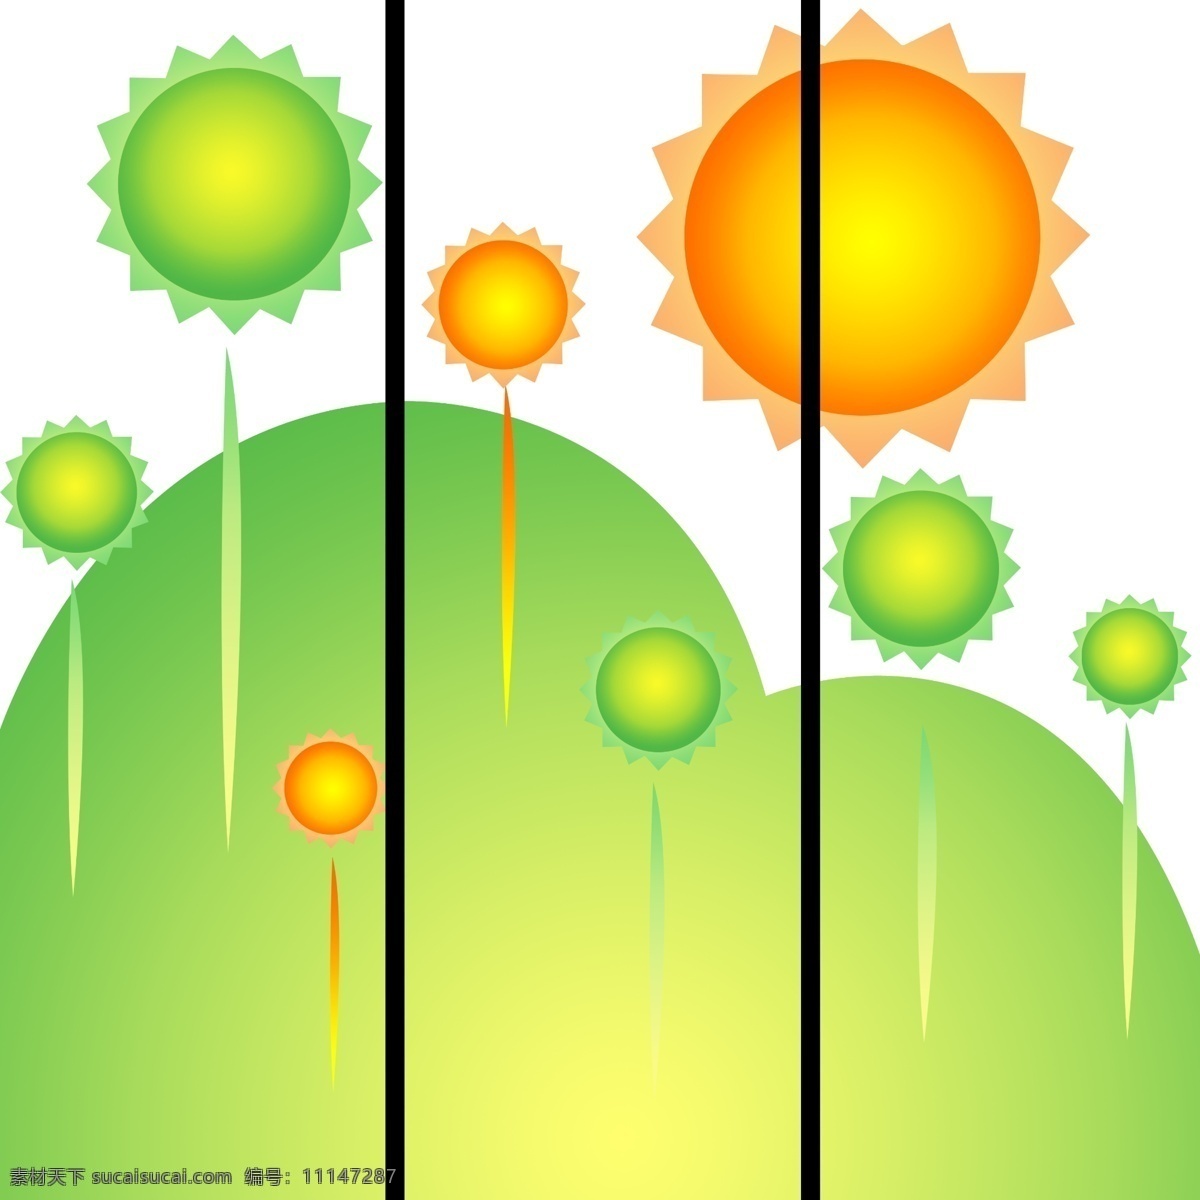 广告设计模板 卡通 可爱 山 太阳 移门 移门图案 模板下载 移门卡通太阳 源文件 装饰素材